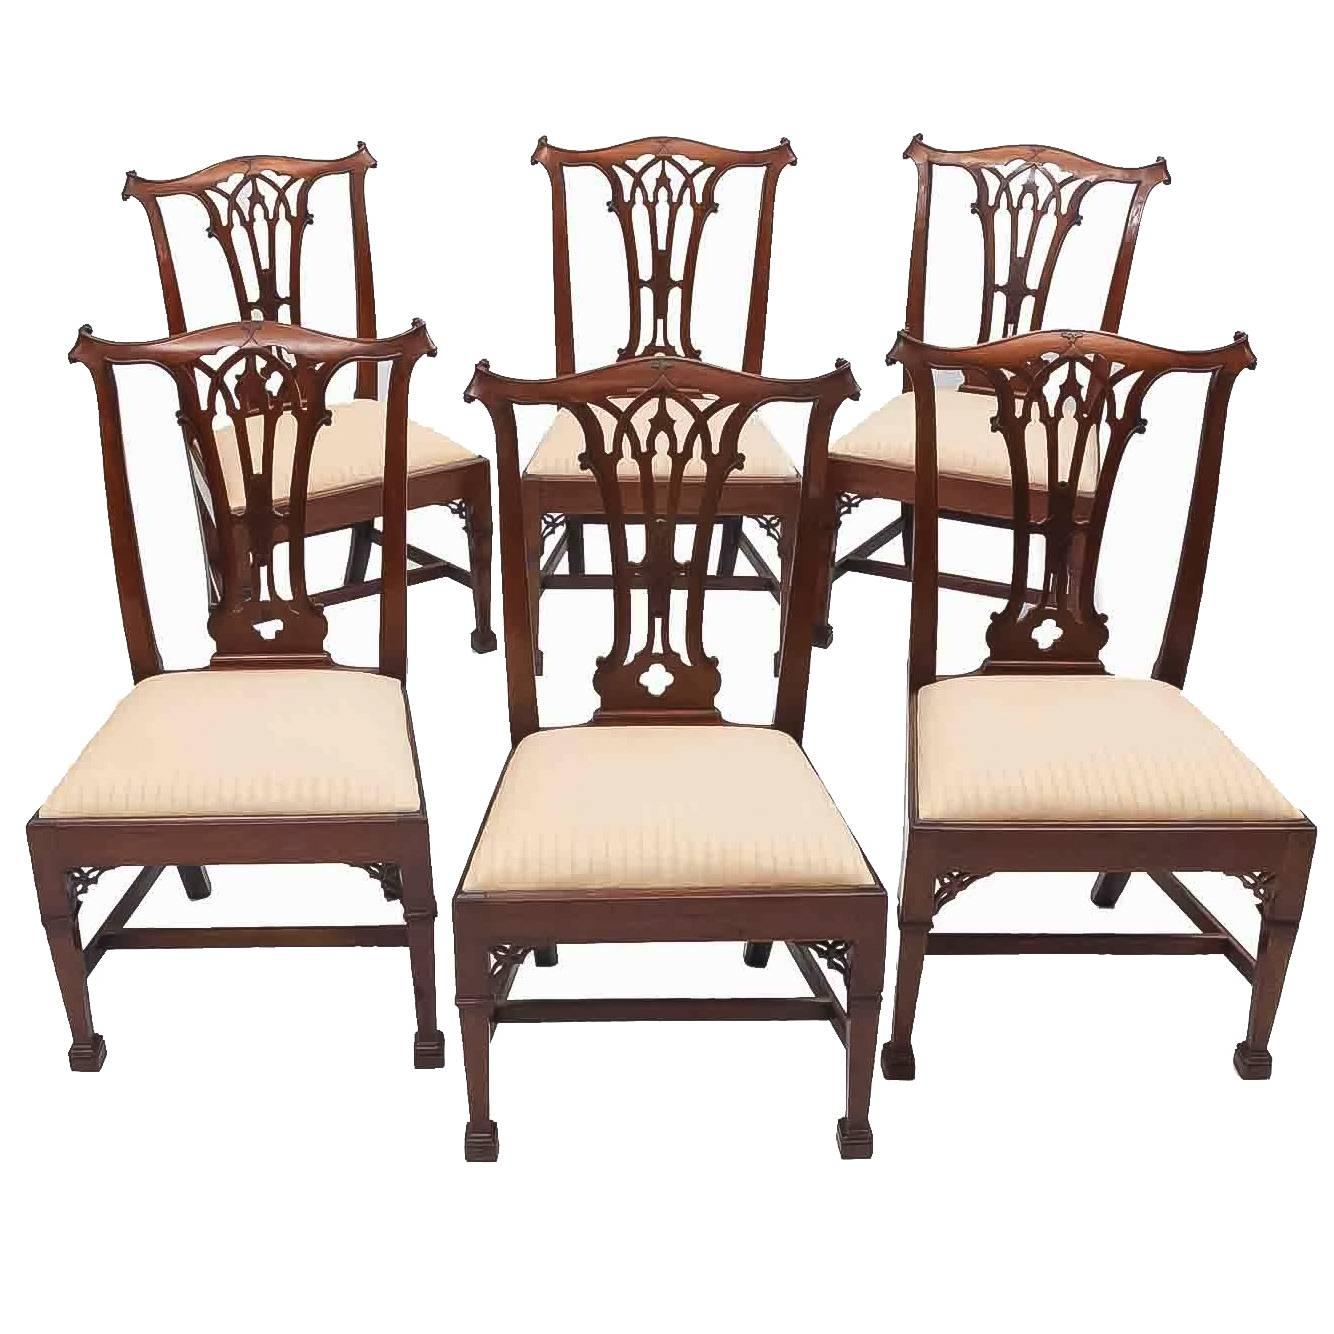 Satz von sechs Esszimmerstühlen im gotischen Chippendale-Stil aus dem frühen 19. Jahrhundert